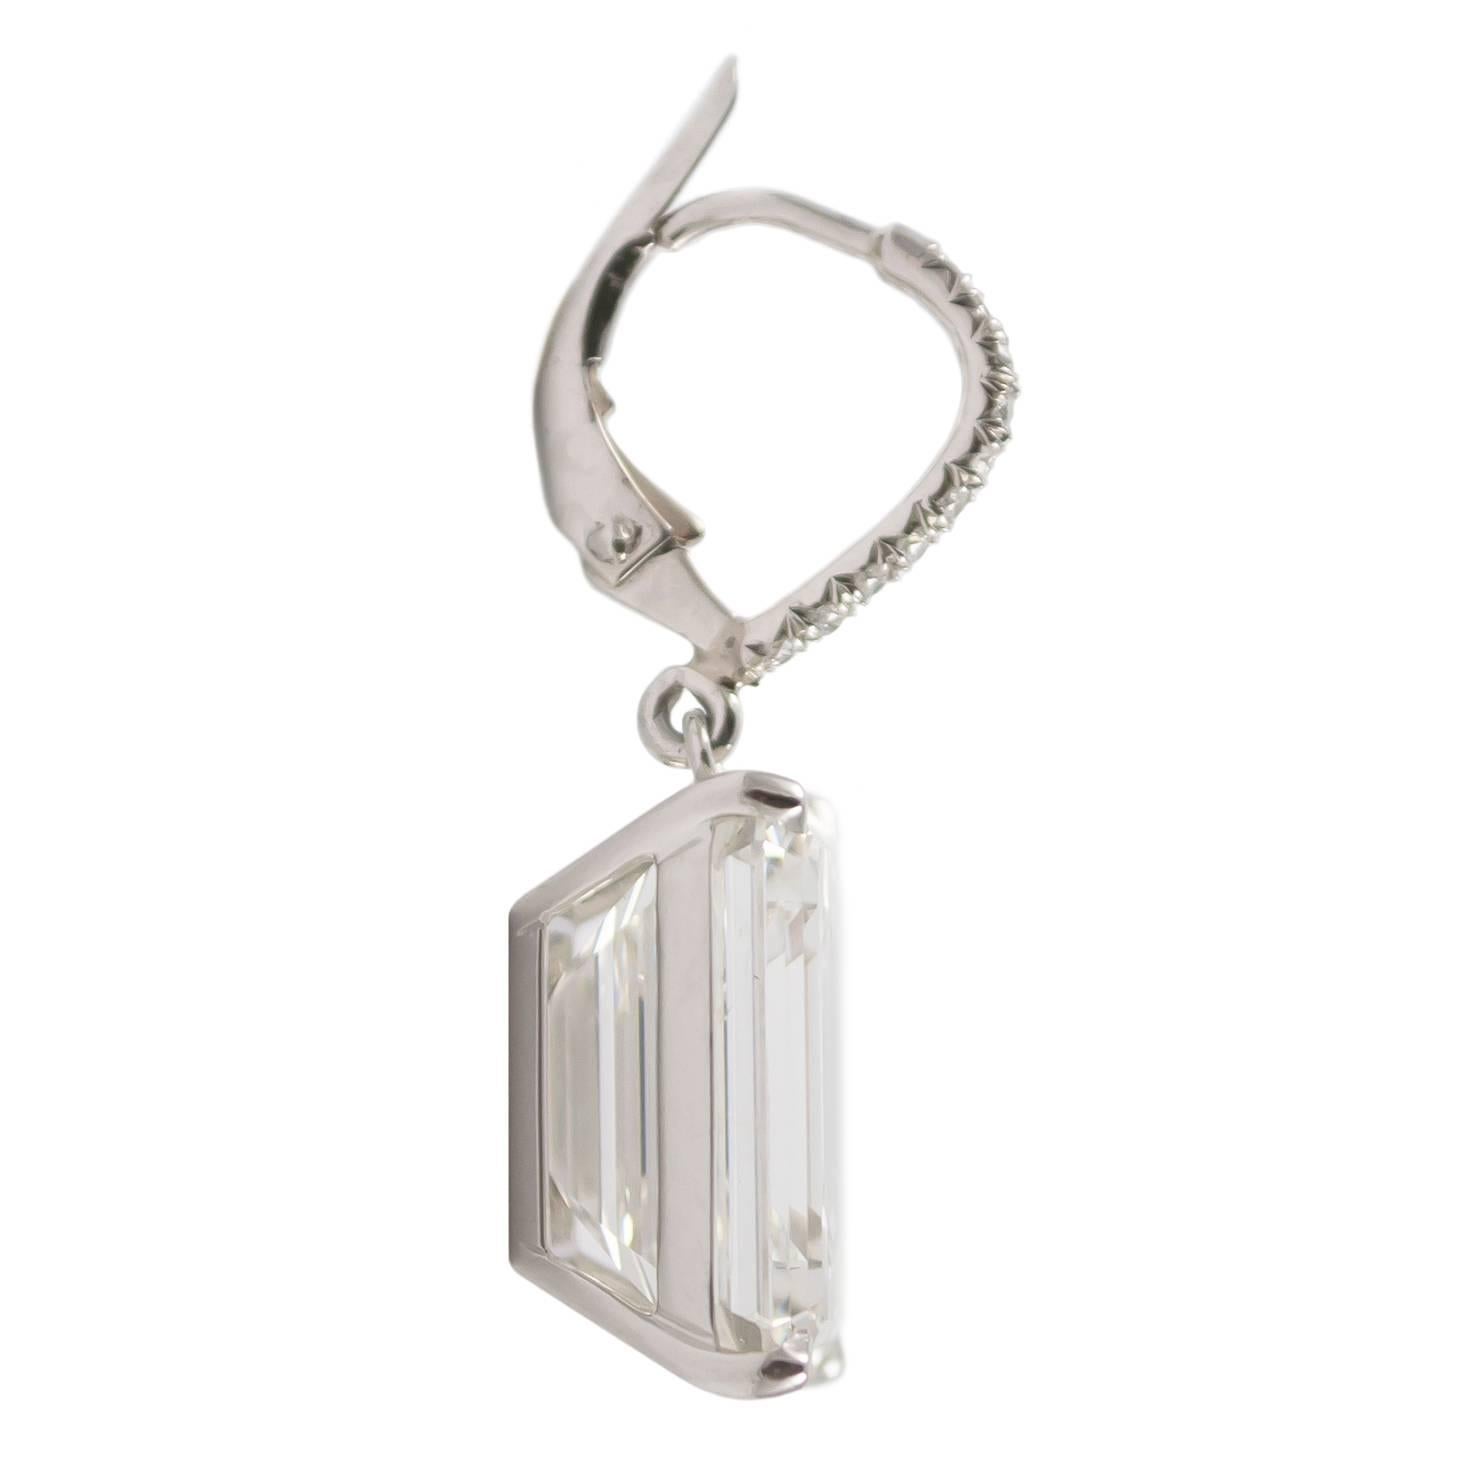 1 carat emerald cut diamond earrings